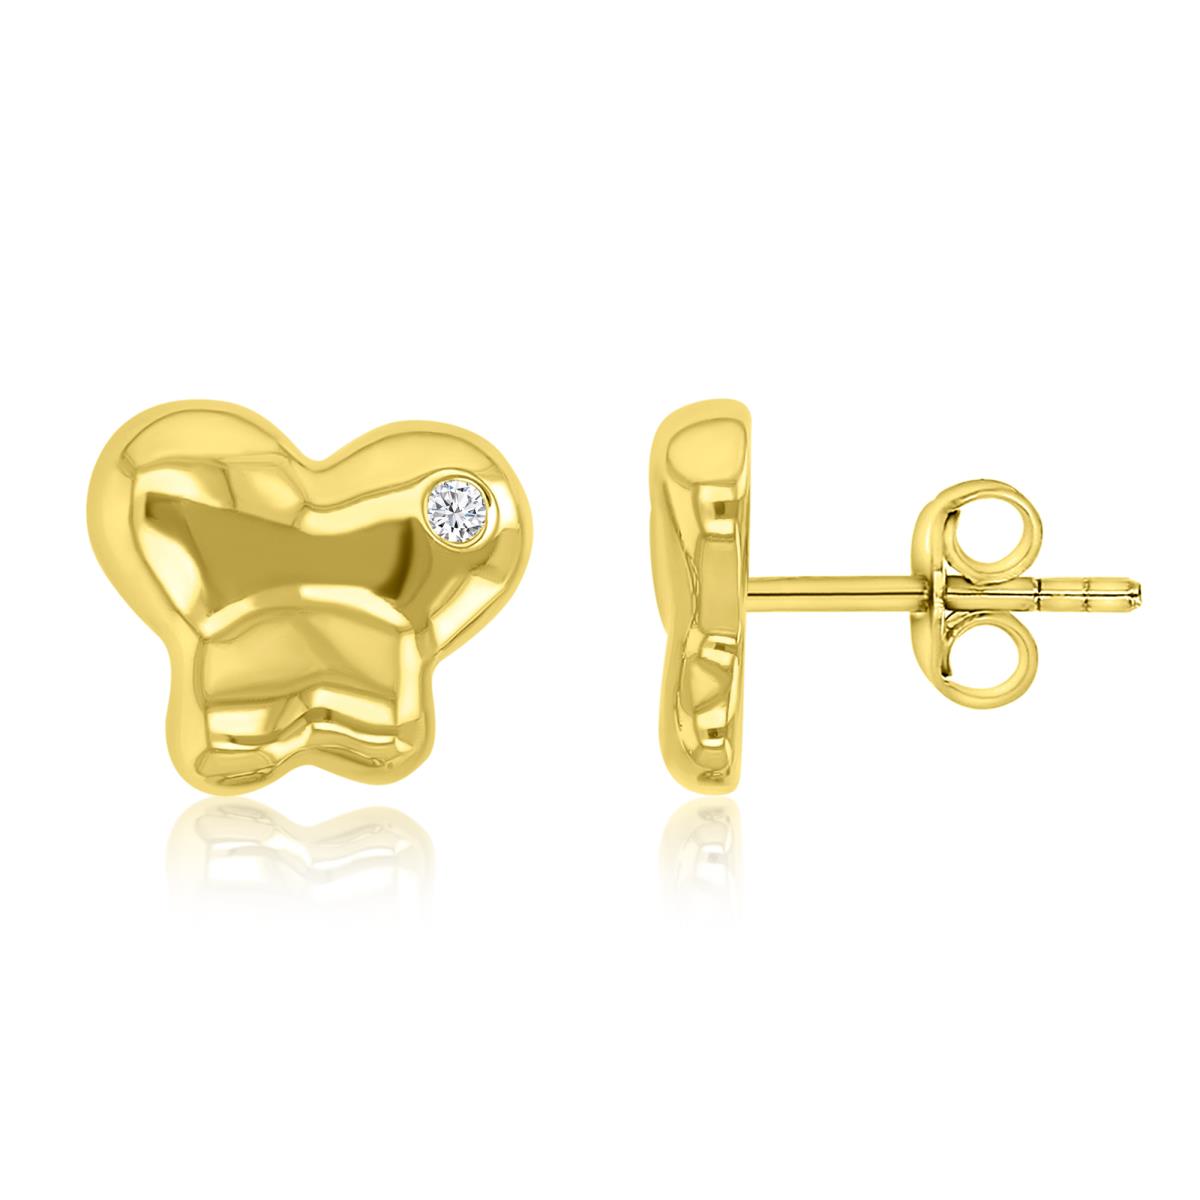 Brass Yellow 17mm White CZ Butterfly Stud Earrings